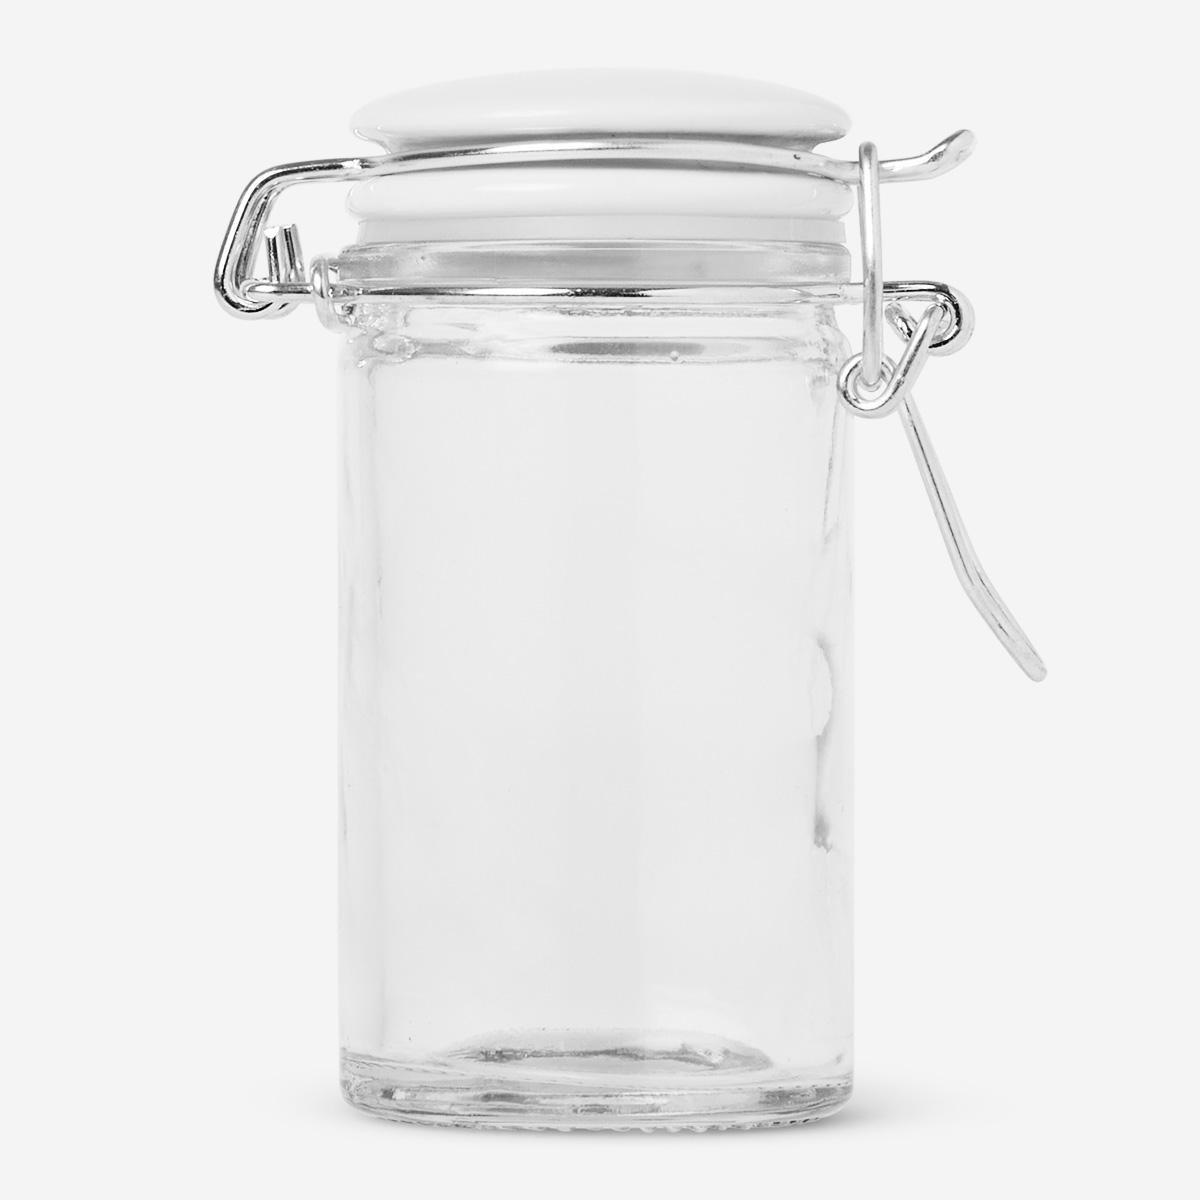 White spice jar